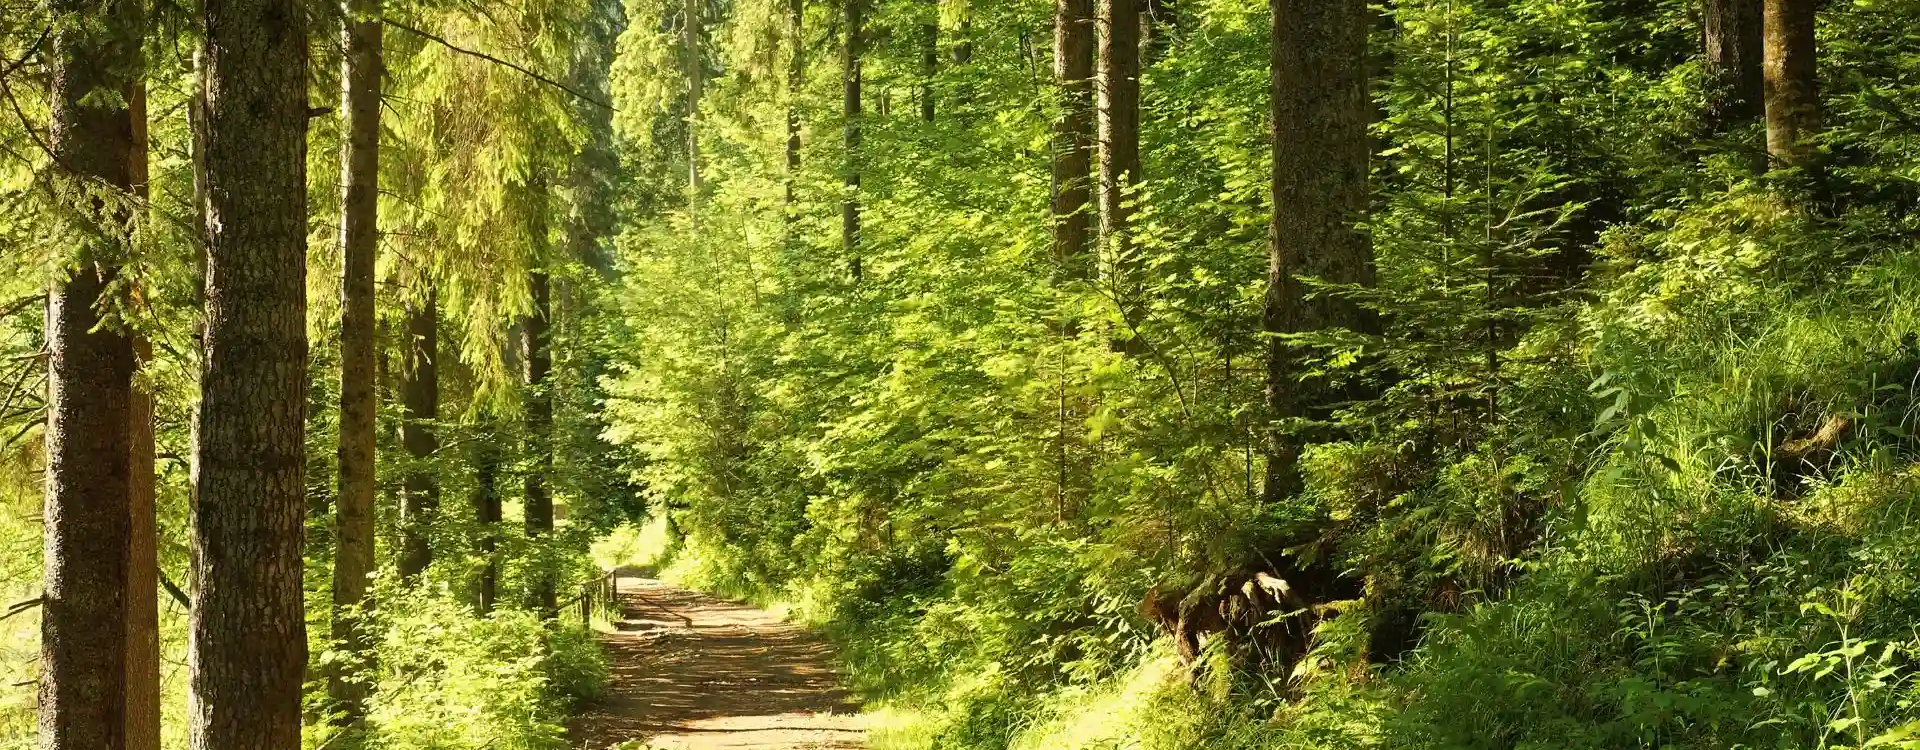 ścieżka w lesie